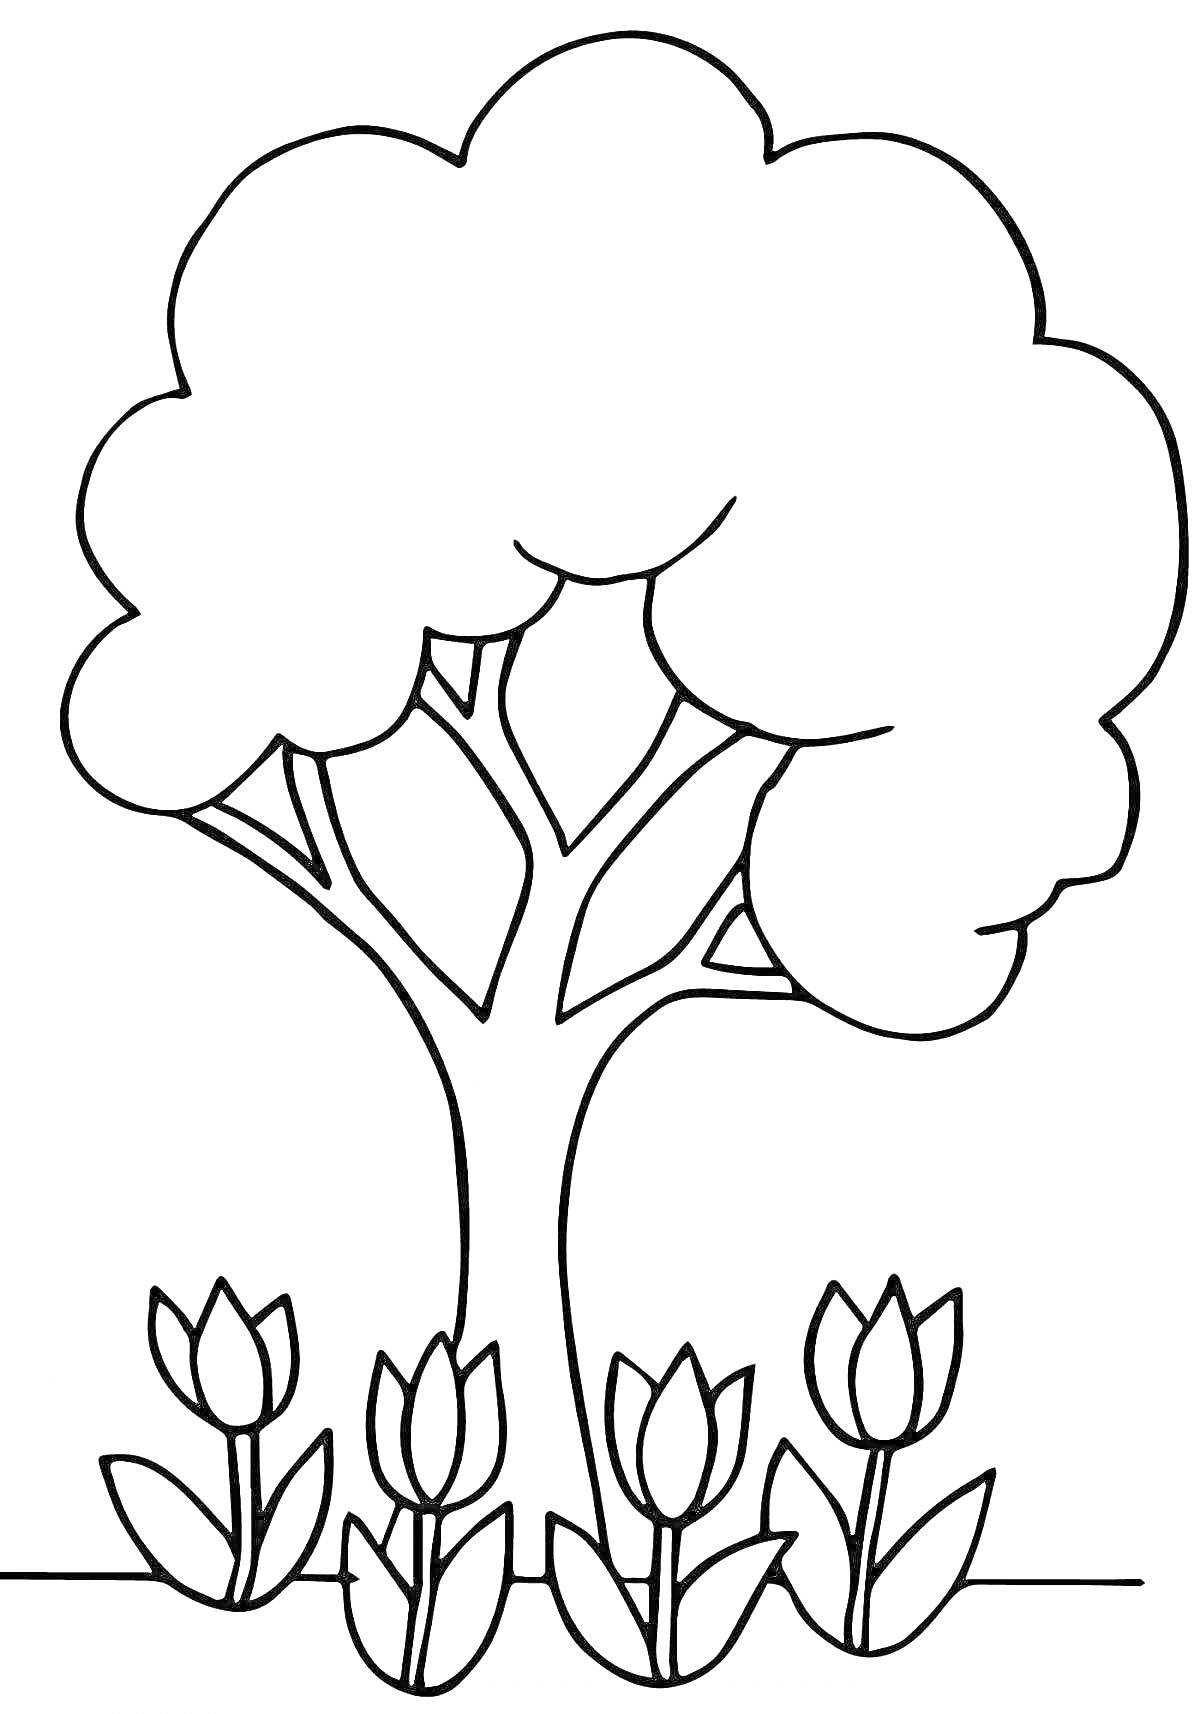 Раскраска Дерево с тюльпанами